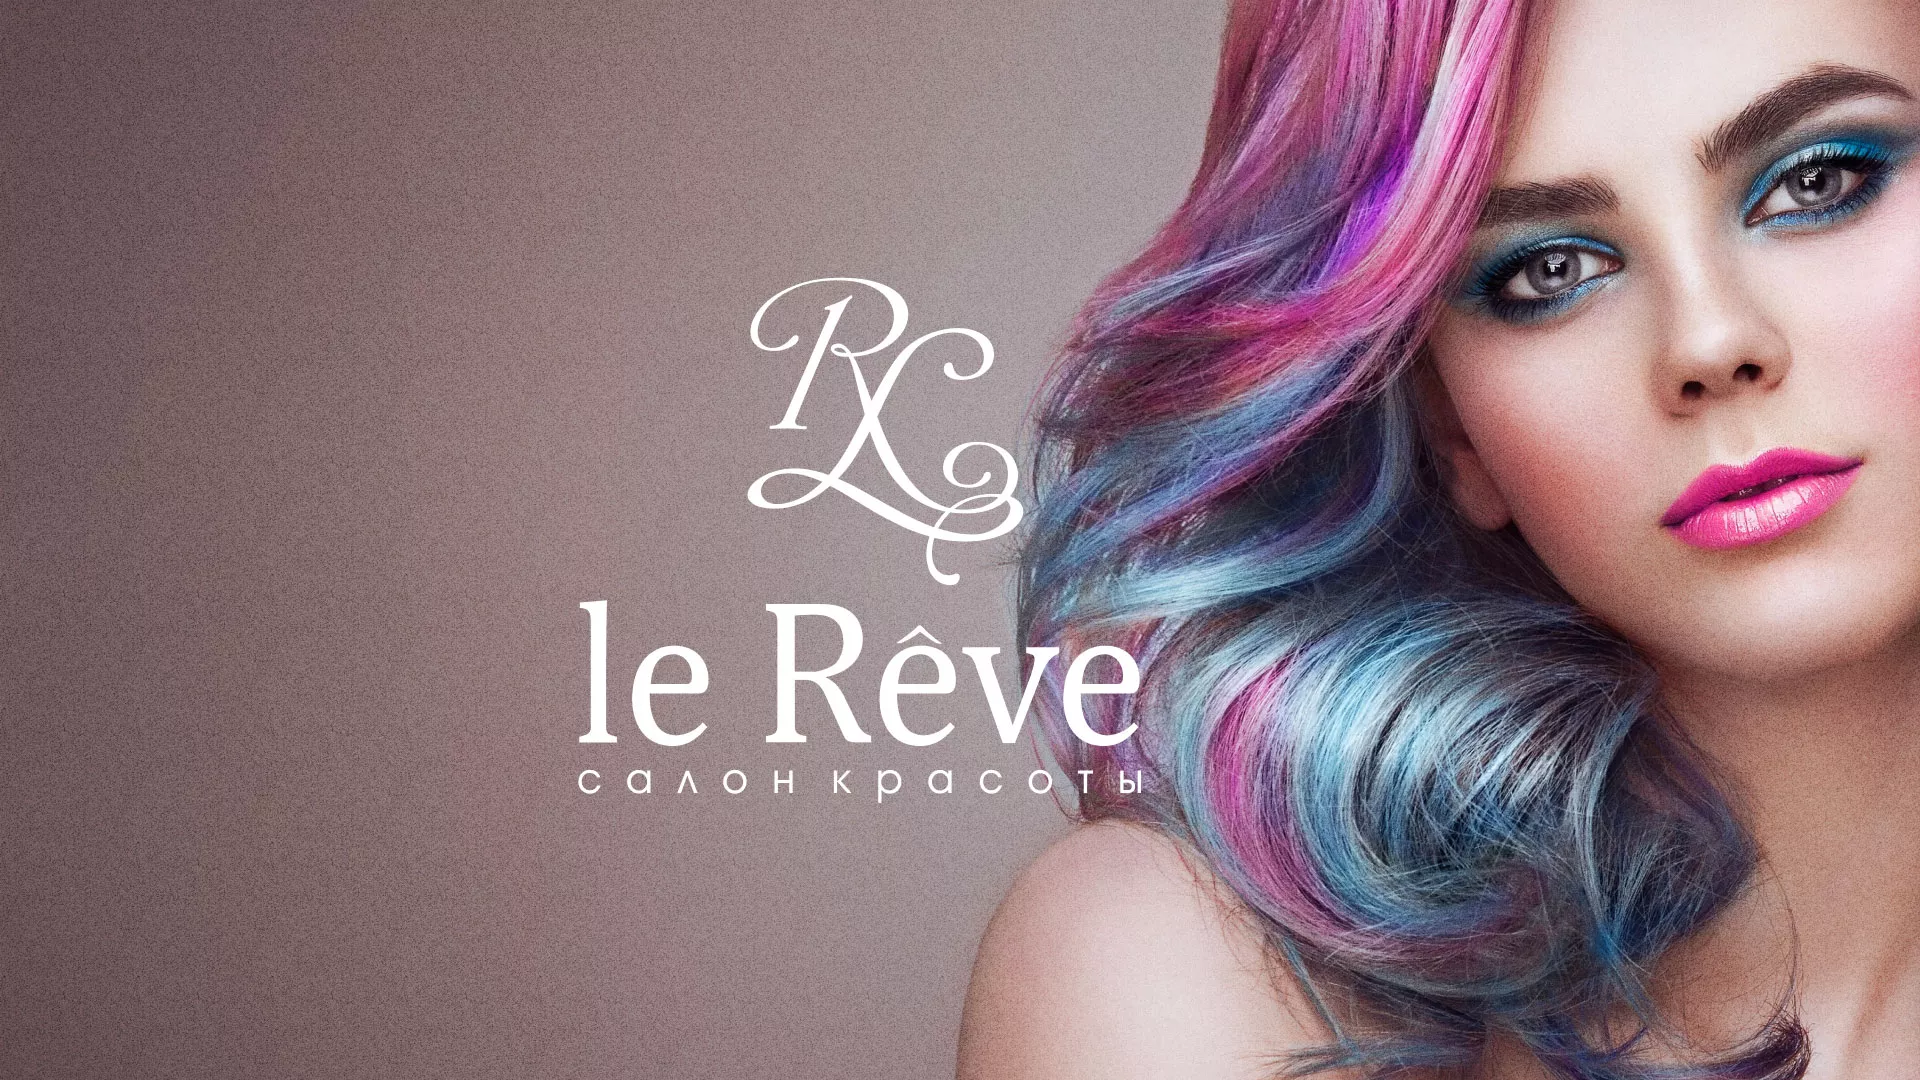 Создание сайта для салона красоты «Le Reve» в Щелково